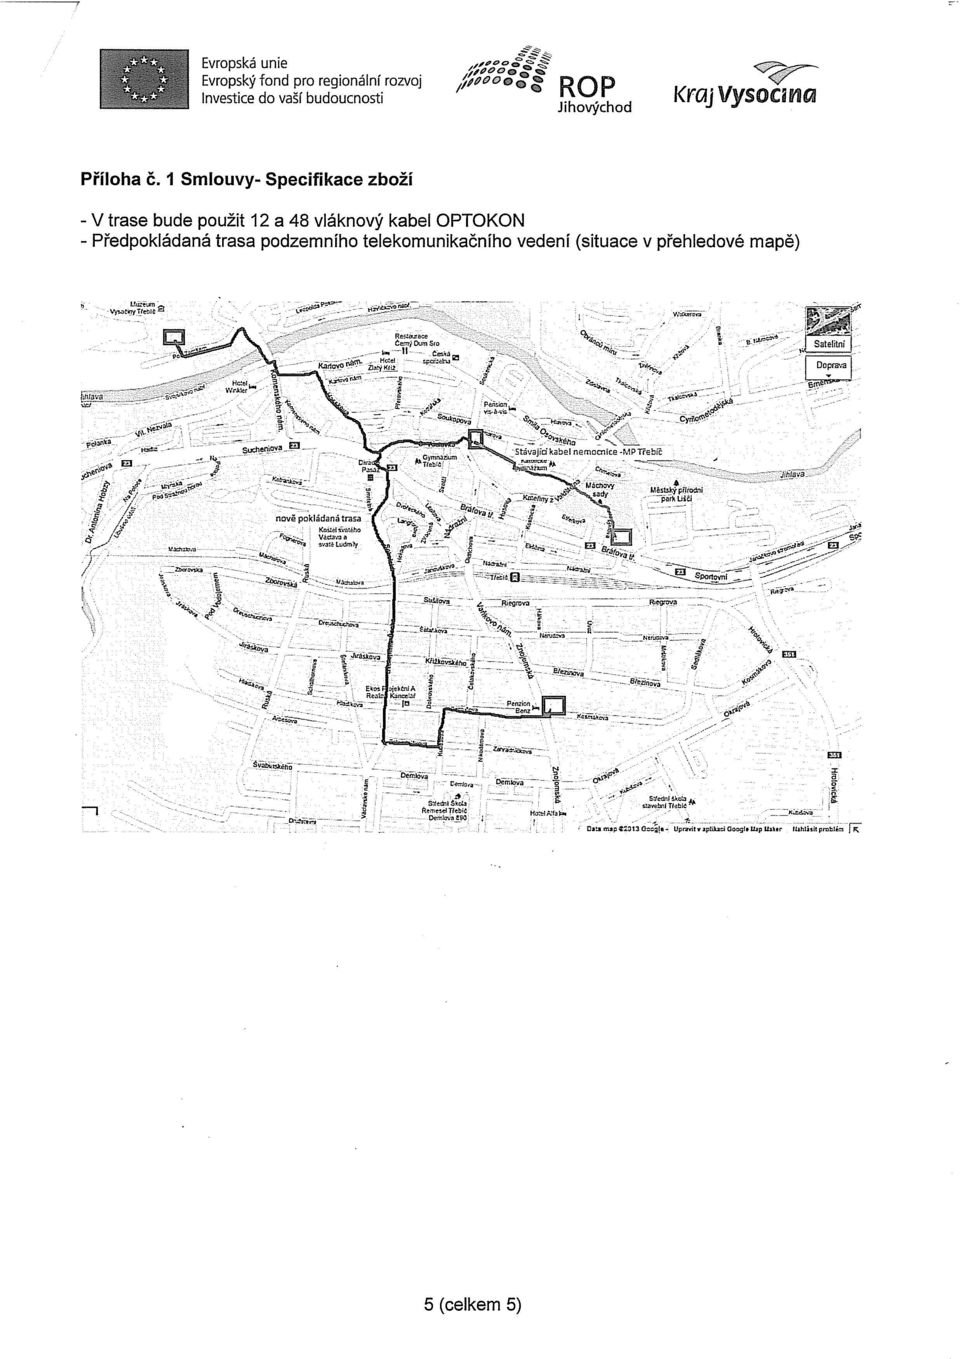 (situace v přehledové mapě) Čemy Dum SÍO Satelitní I KartovážarýKt^, Stávající kabel nemocnice -MPTrebíc Máchovy sady Městský přírodní "párx